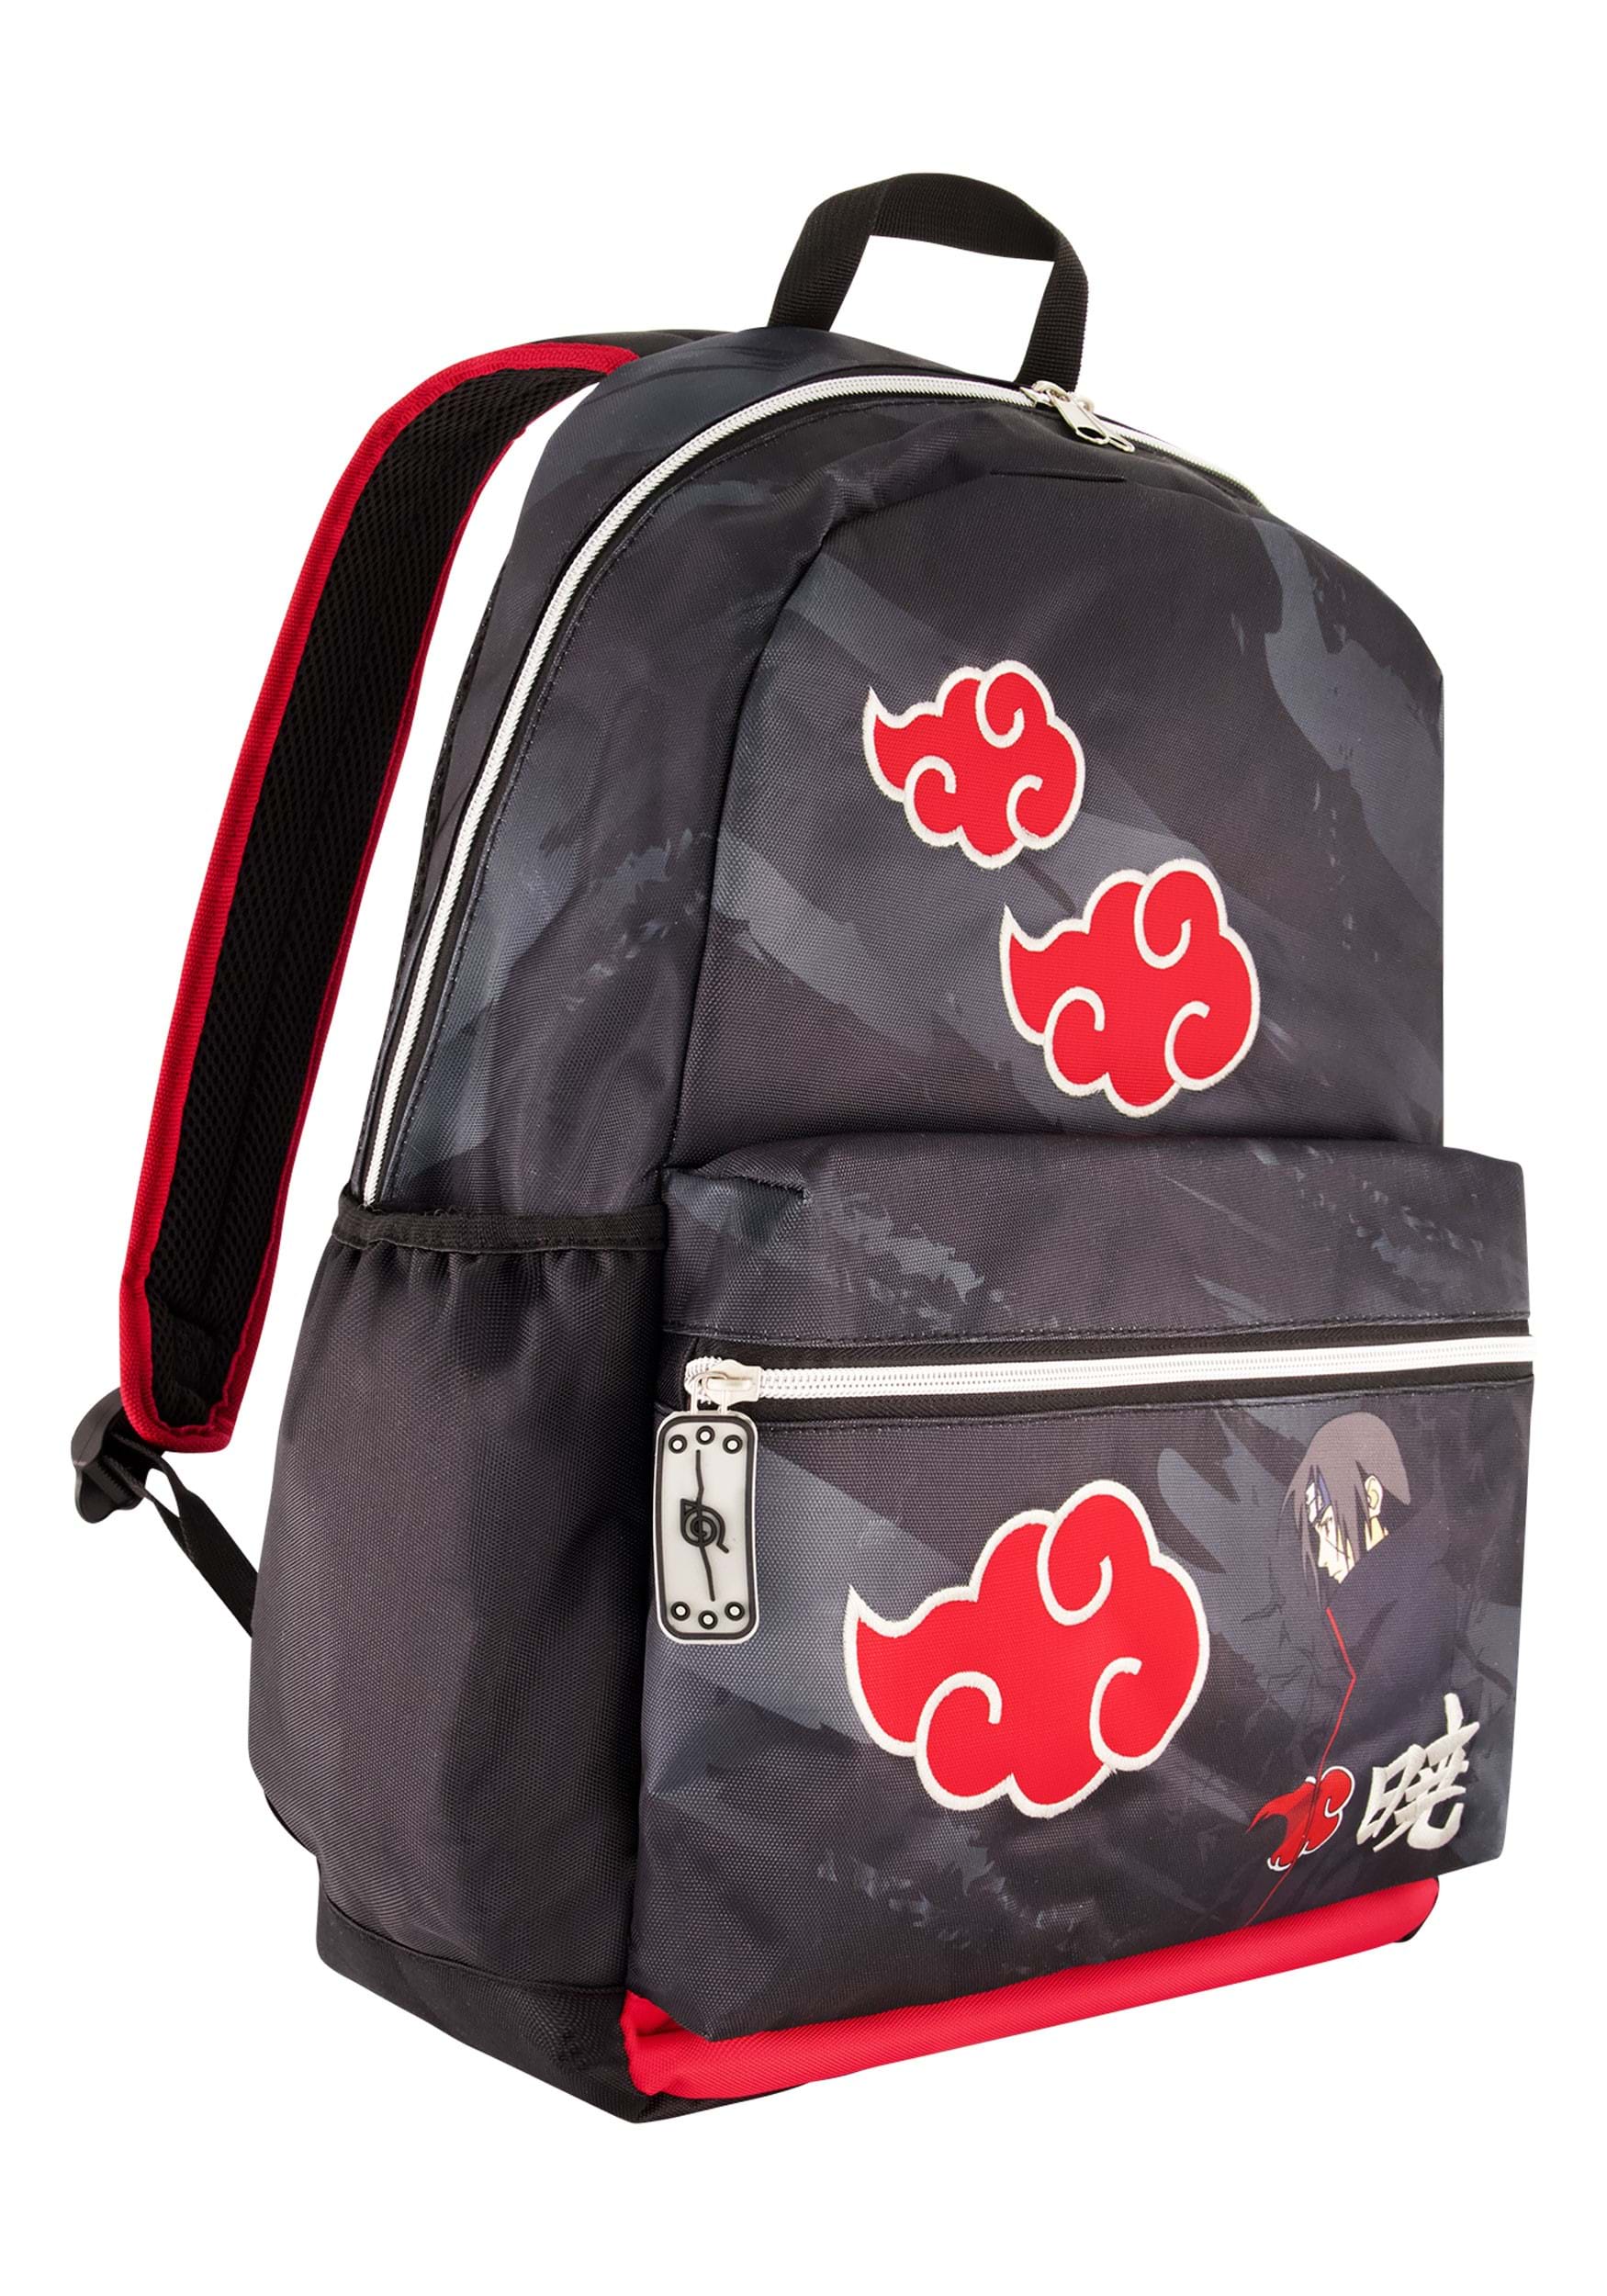 naruto backpack hot topic